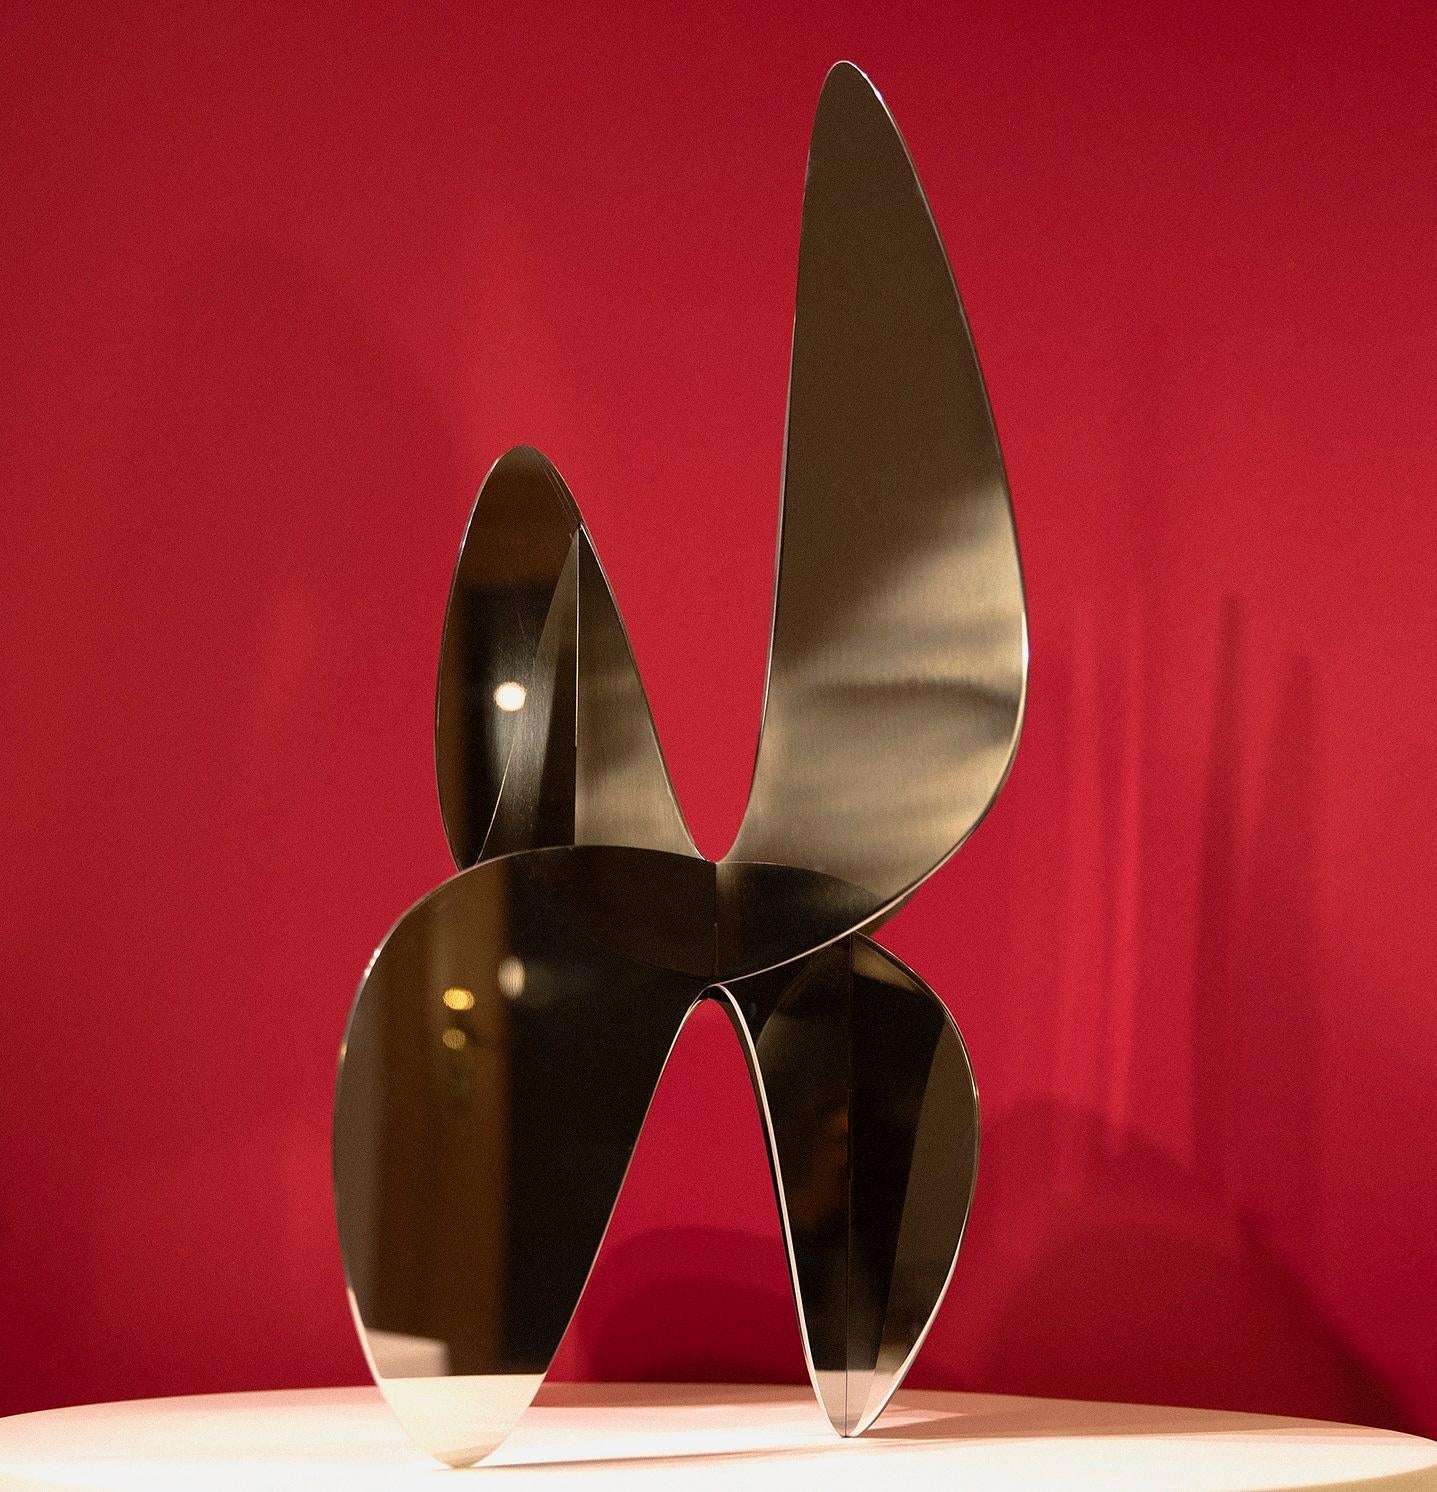 Barricada #9 aip M2 est une sculpture en acier inoxydable de l'artiste vénézuélien contemporain Alejandro Vega Beuvrin. Les tôles d'acier ont une épaisseur de 3 mm. Edition limitée à 5 + 3 A.P.
Dans un style minimaliste et influencé par ses